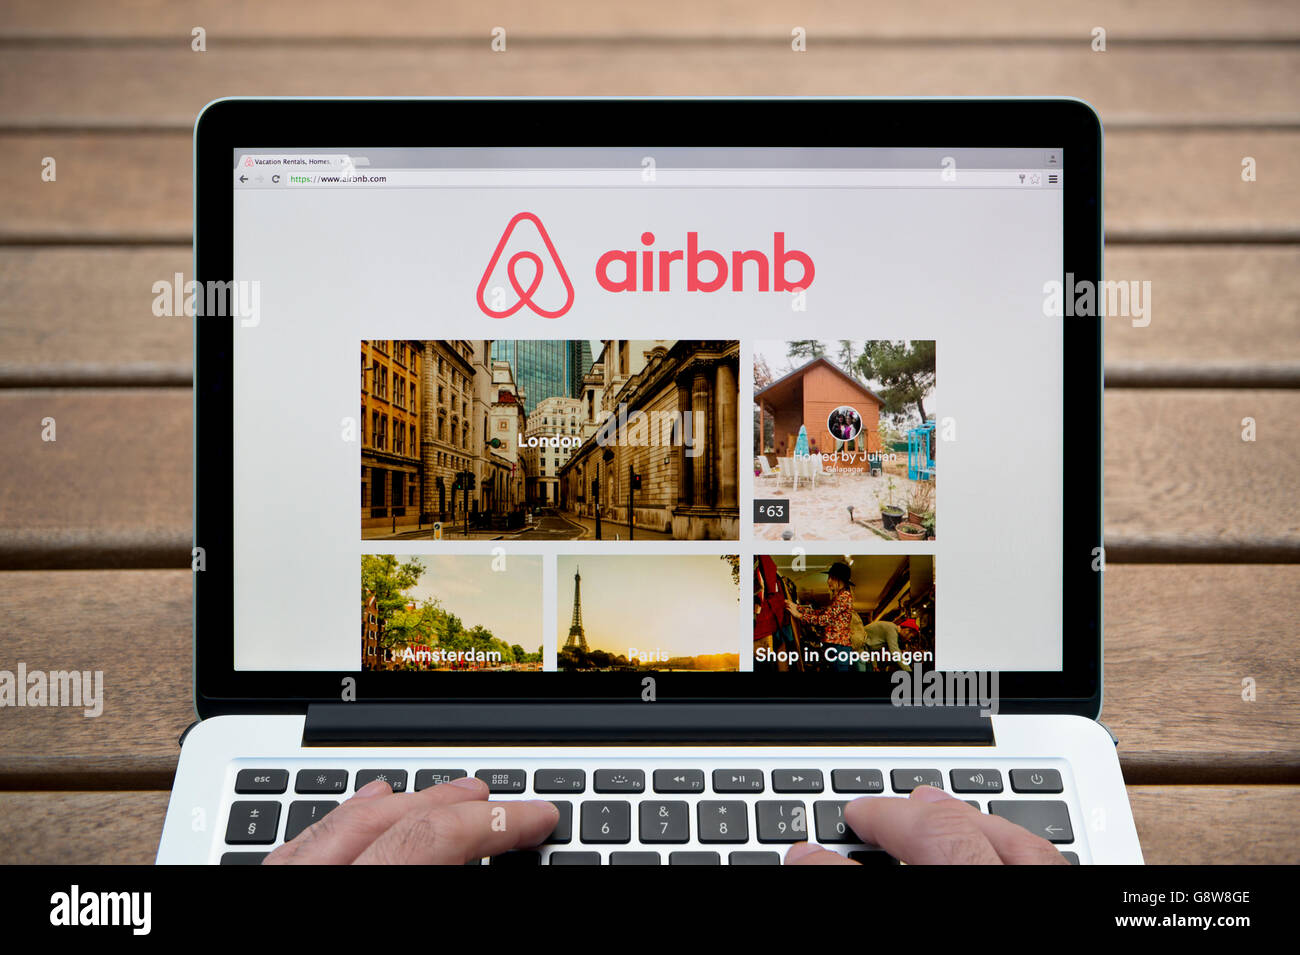 Le site Airbnb sur un MacBook contre un banc en bois fond de plein air y compris les doigts d'un homme (usage éditorial uniquement). Banque D'Images